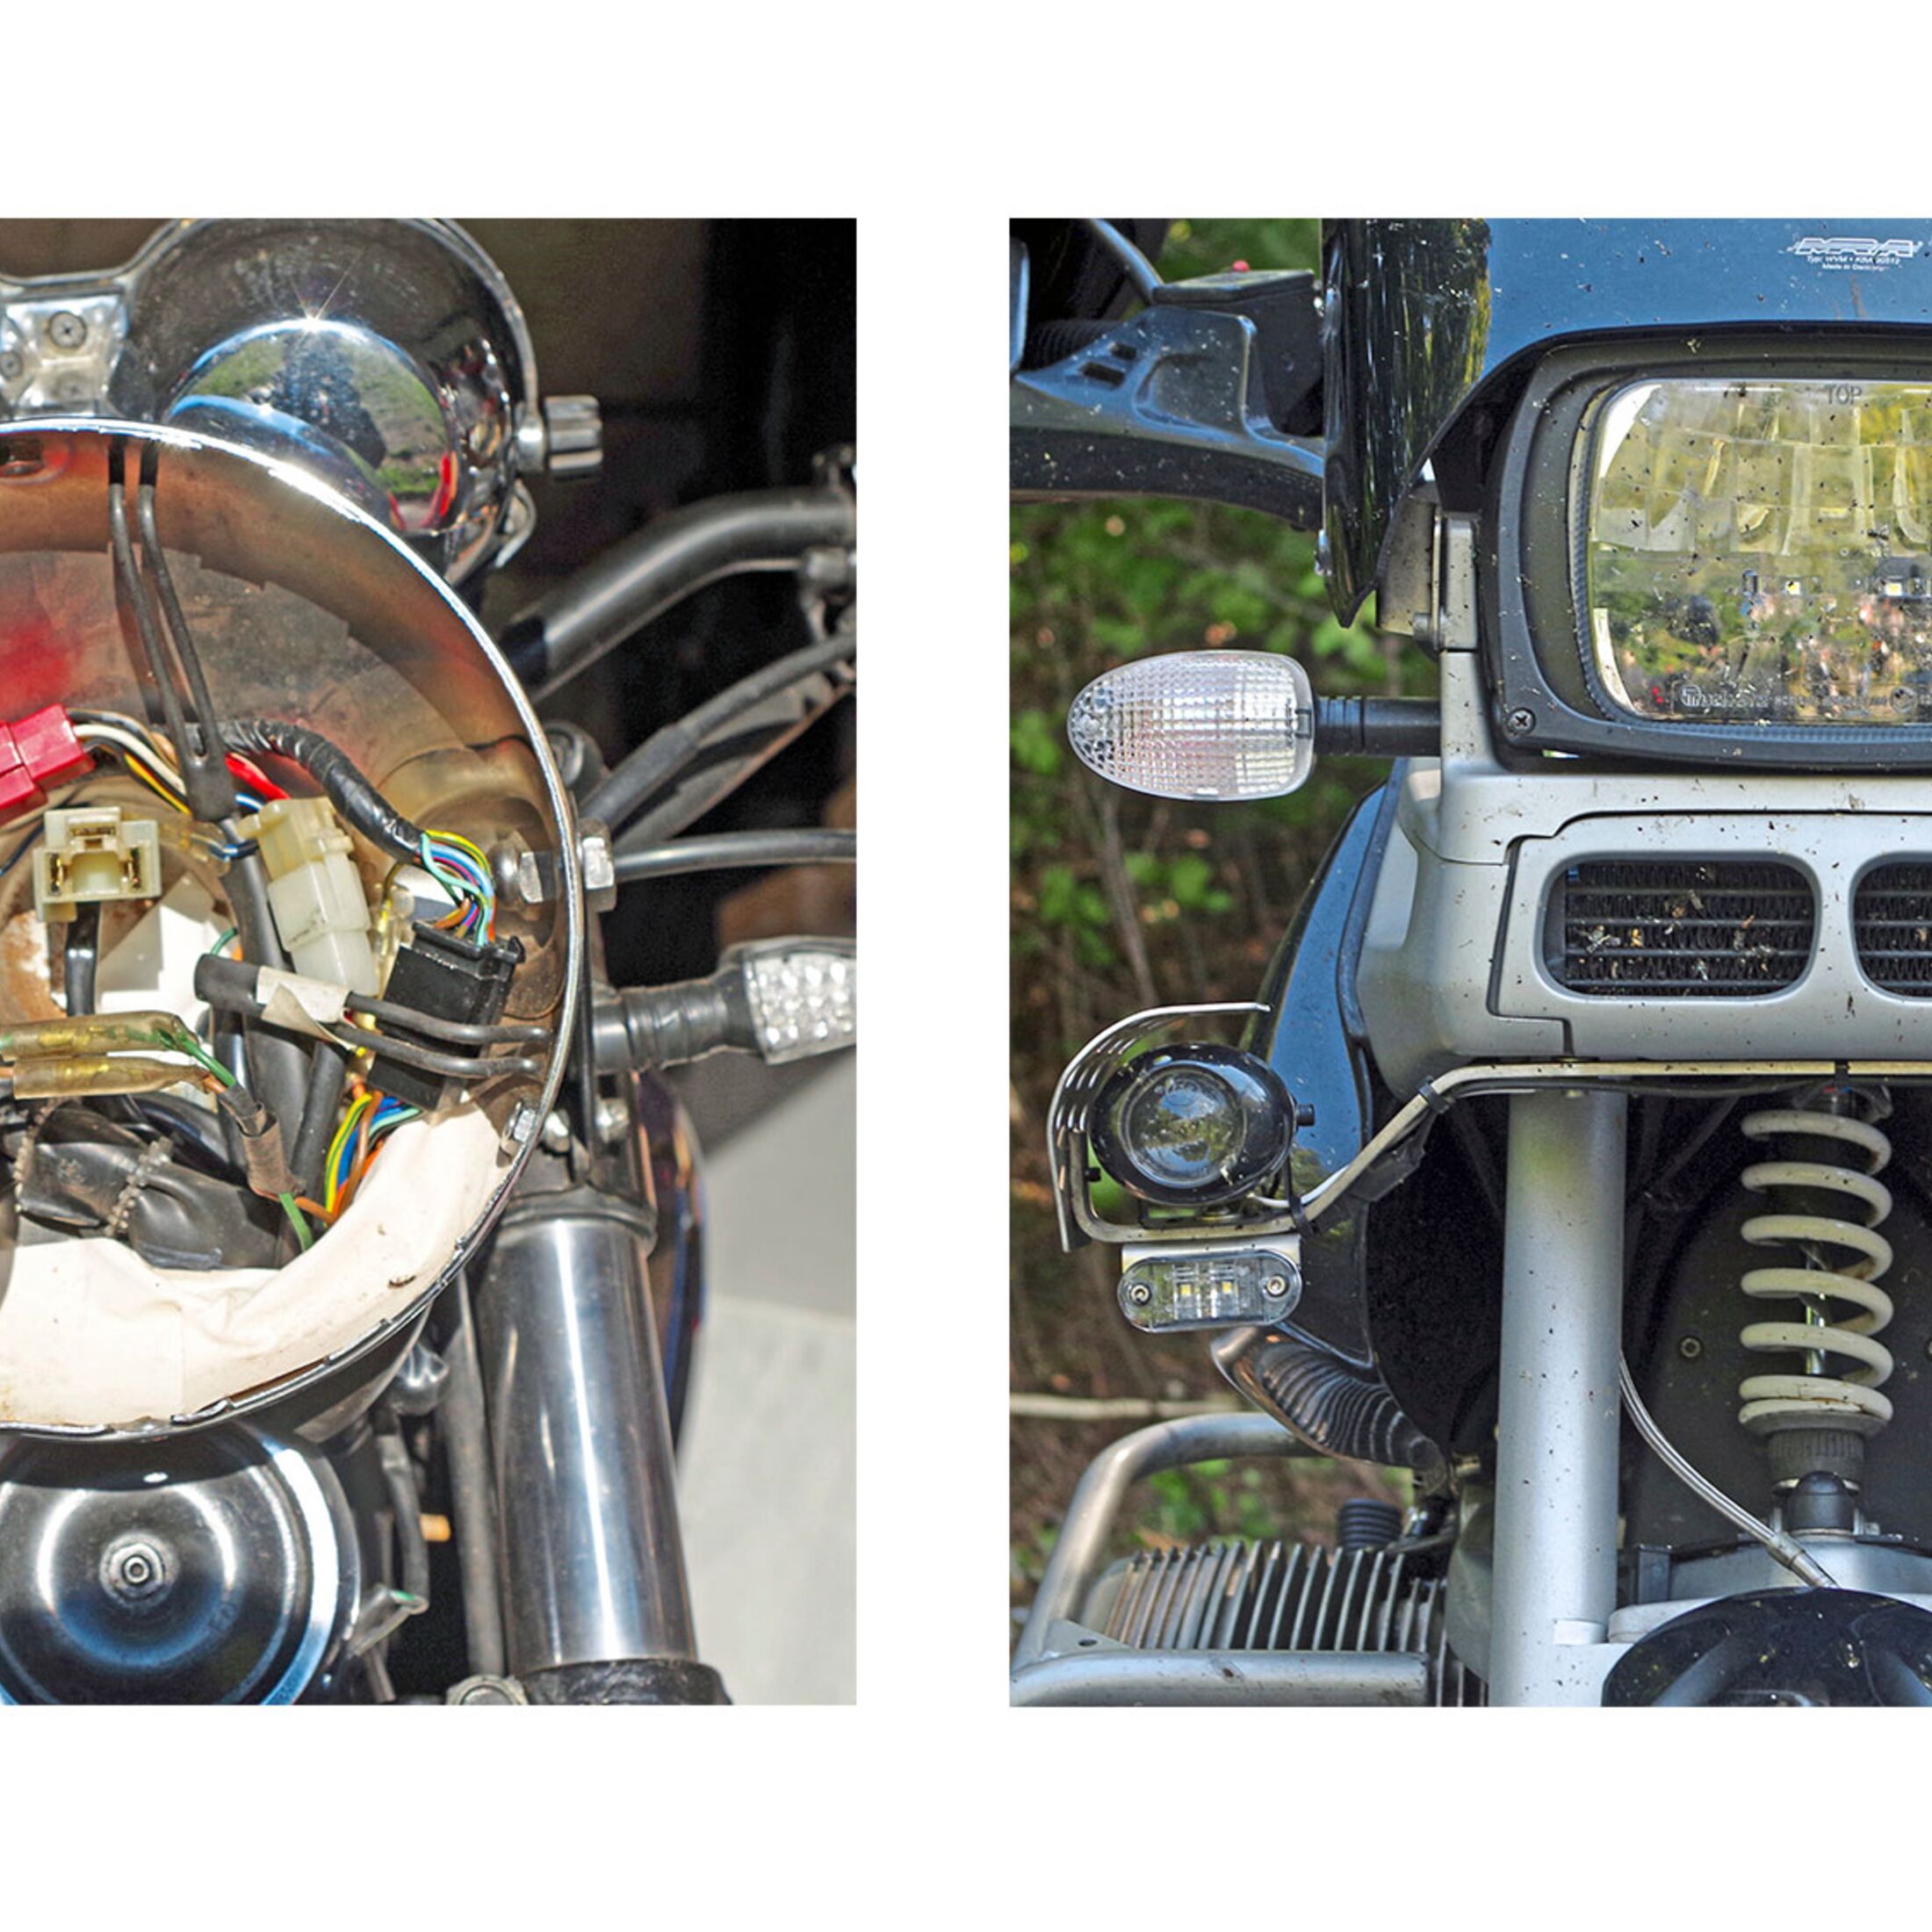 Schraubertipp: Vorschriften für Beleuchtung am Motorrad